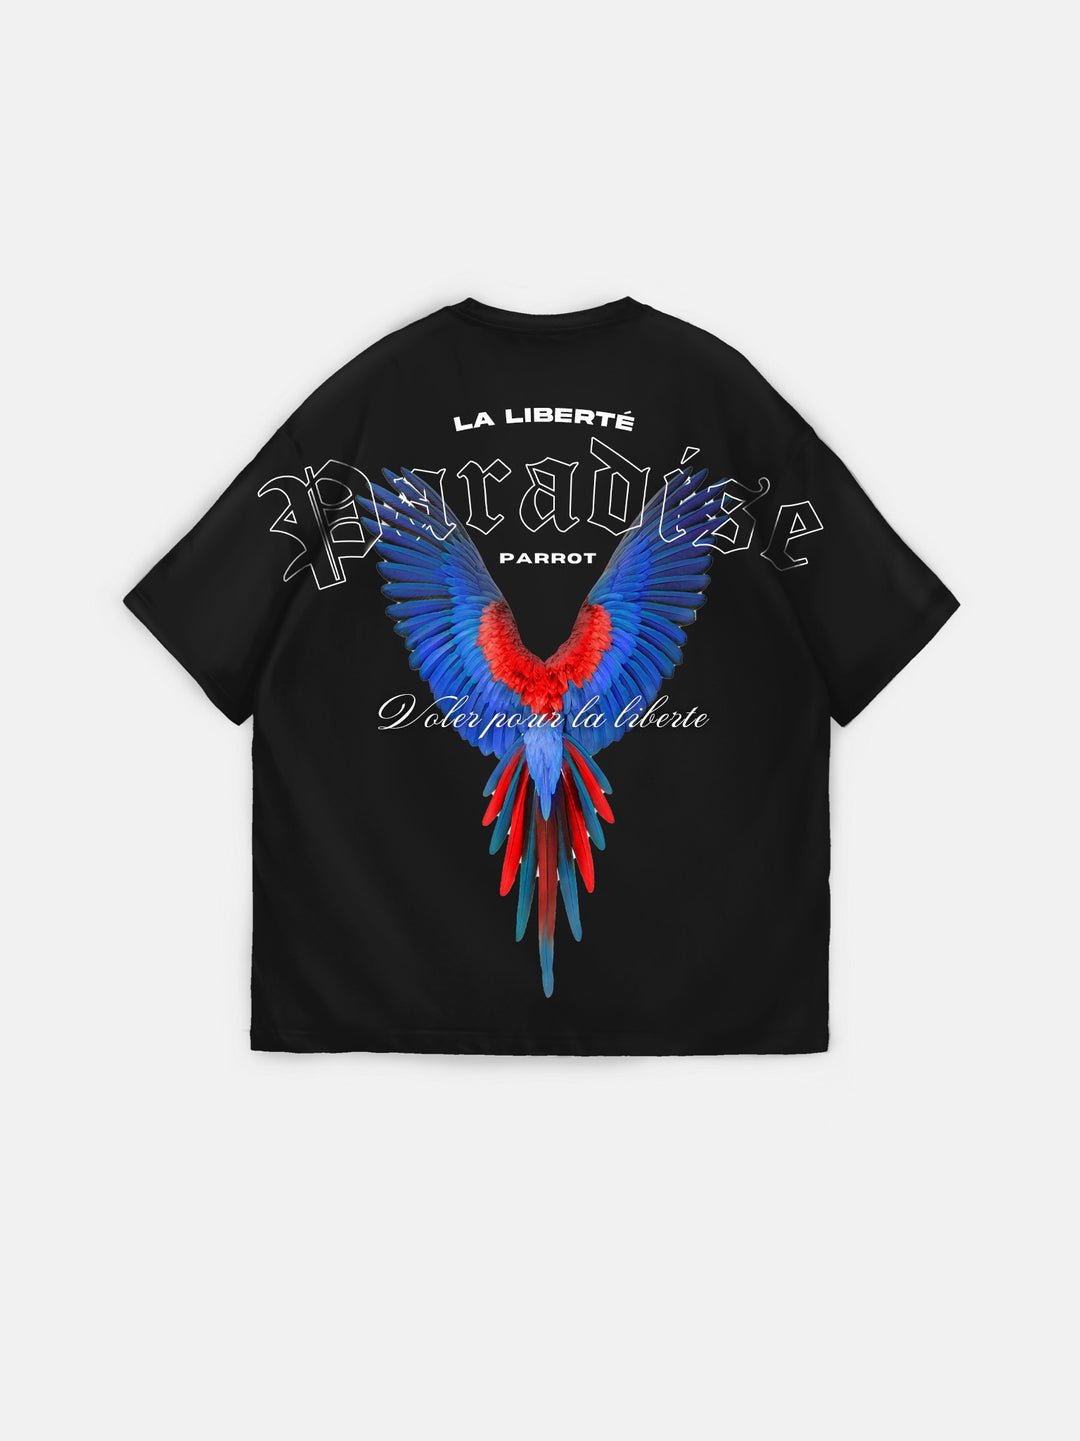 Oversize La Liberté Paradise T-shirt - Black and Blue